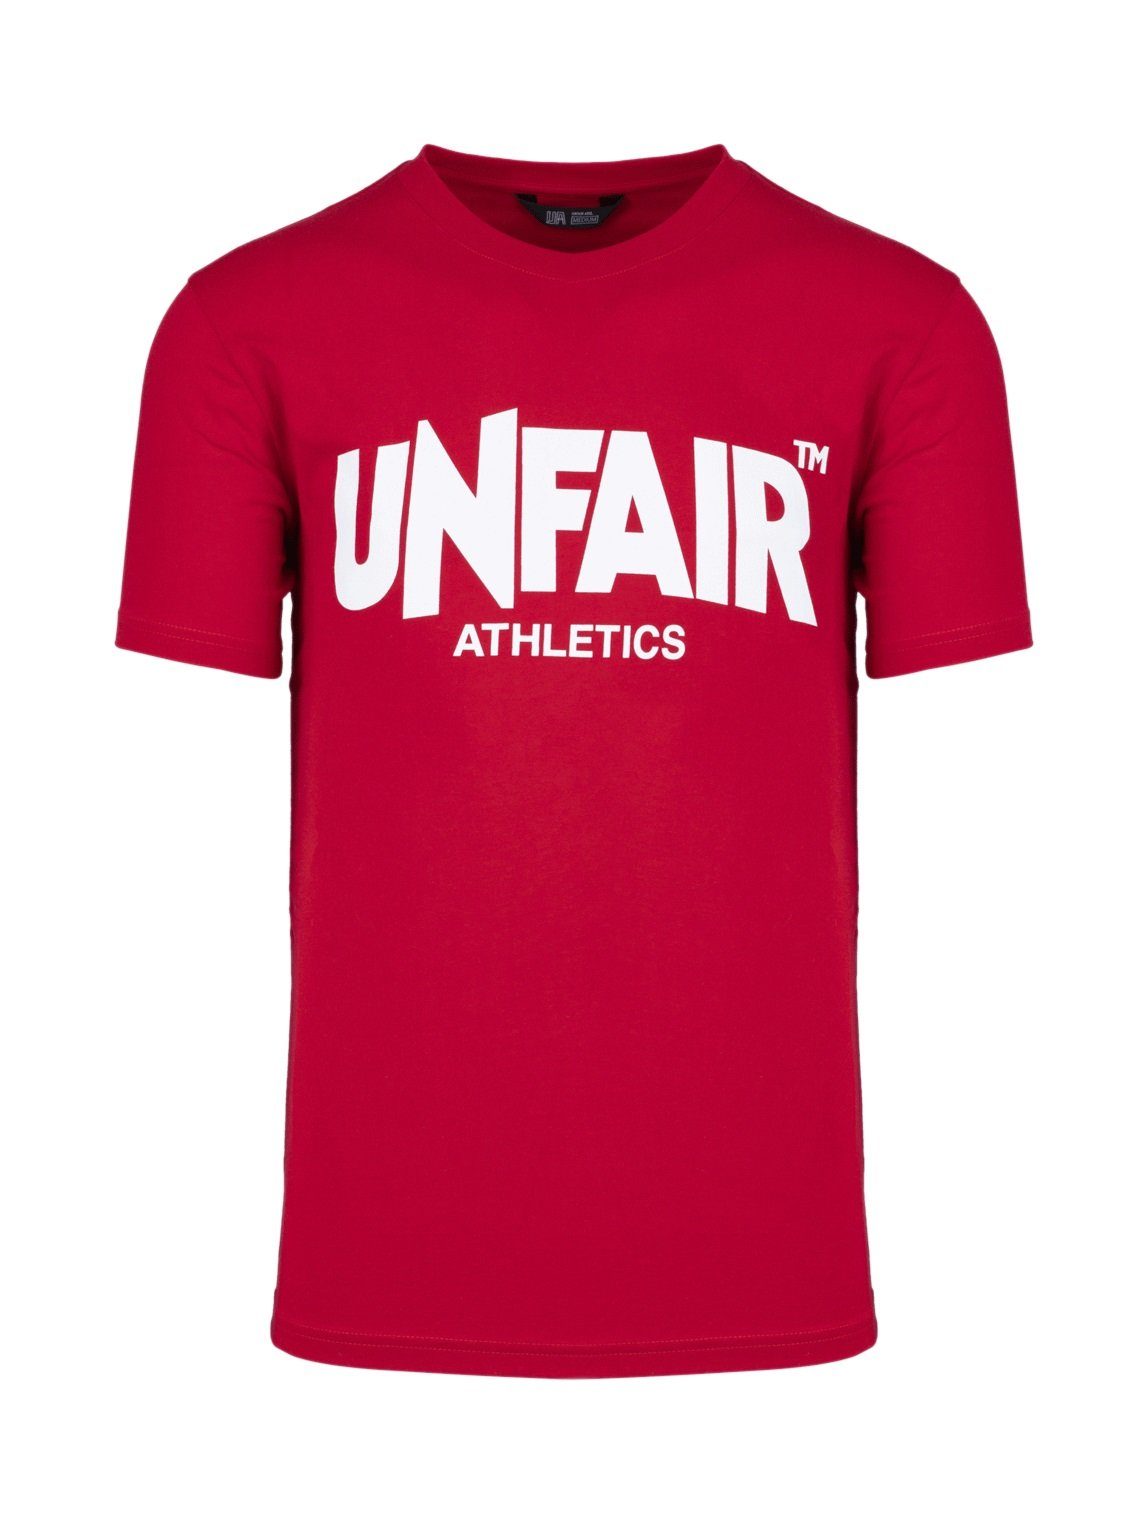 Label Athletics Unfair Classic Adult T-Shirt Herren T-Shirt 2016 Unfair Athletics